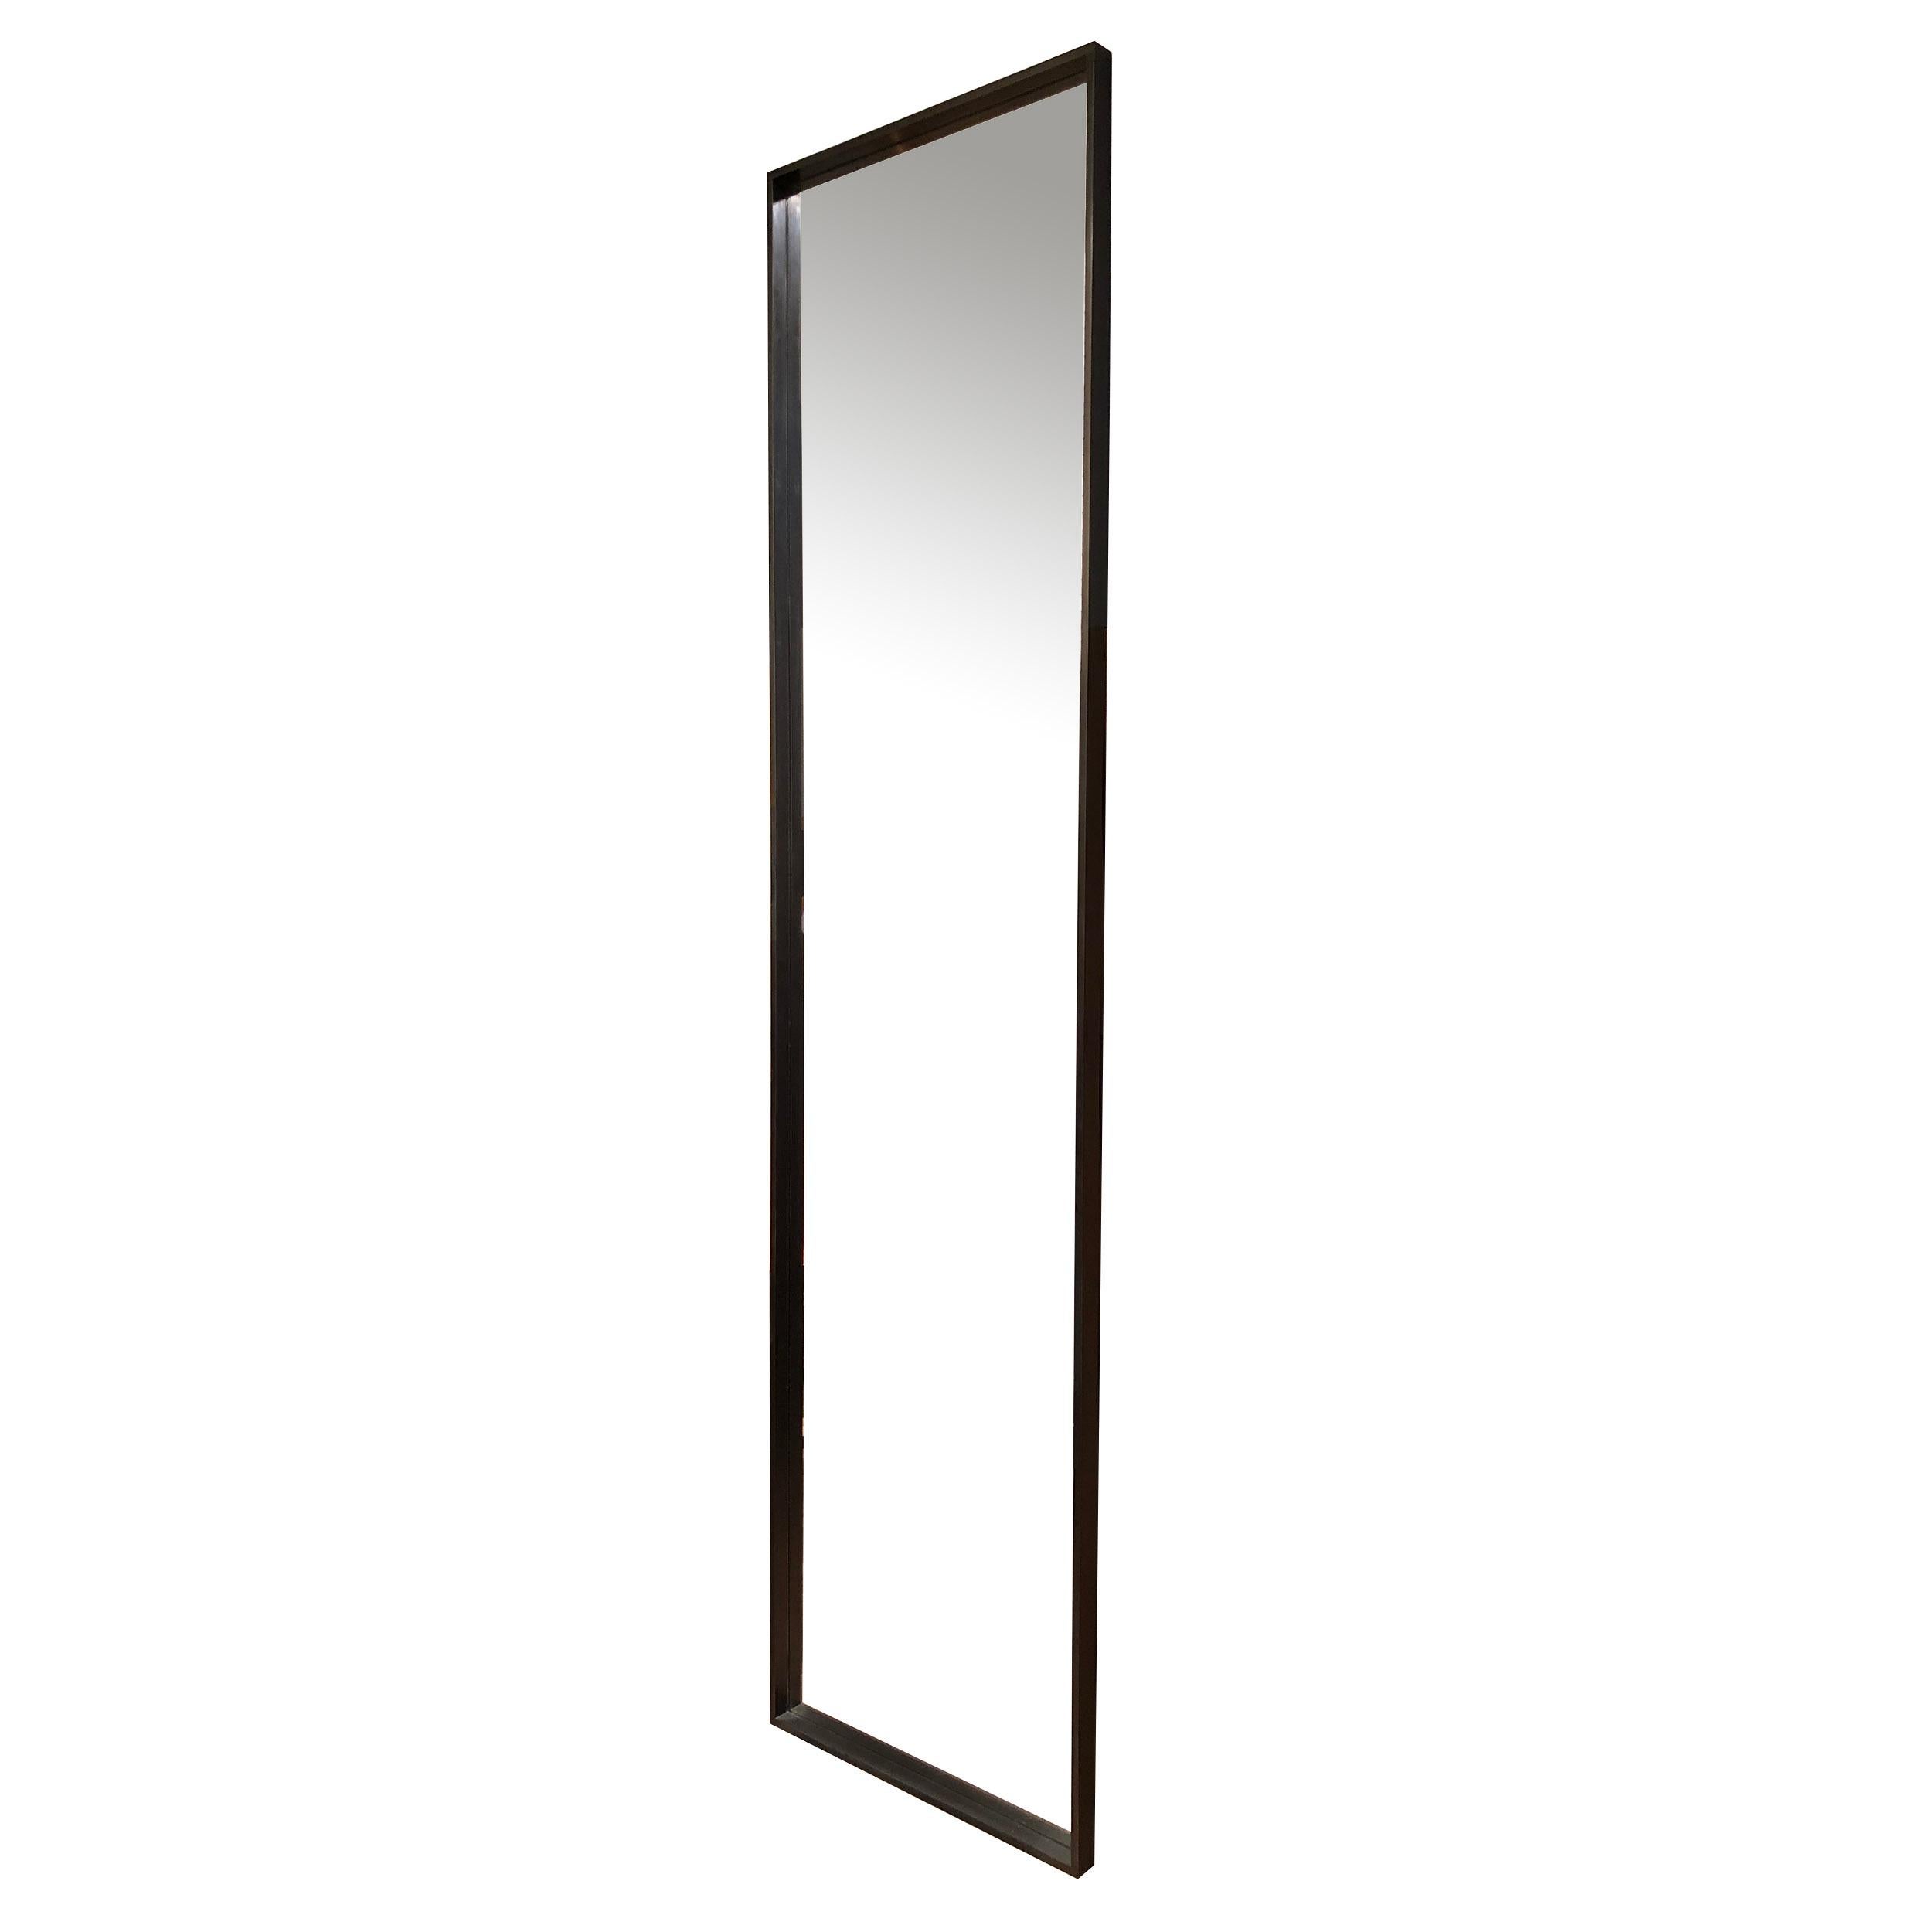 Ein originaler rechteckiger Spiegel von WYETH mit einem maschinell bearbeiteten Rahmen aus geschwärzter Bronze mit tiefer Kante. Maße: 24 x 96 Zoll. Hergestellt vom Wyeth Workshop in NY. Erhältlich in polierter, gebürsteter, patinierter oder